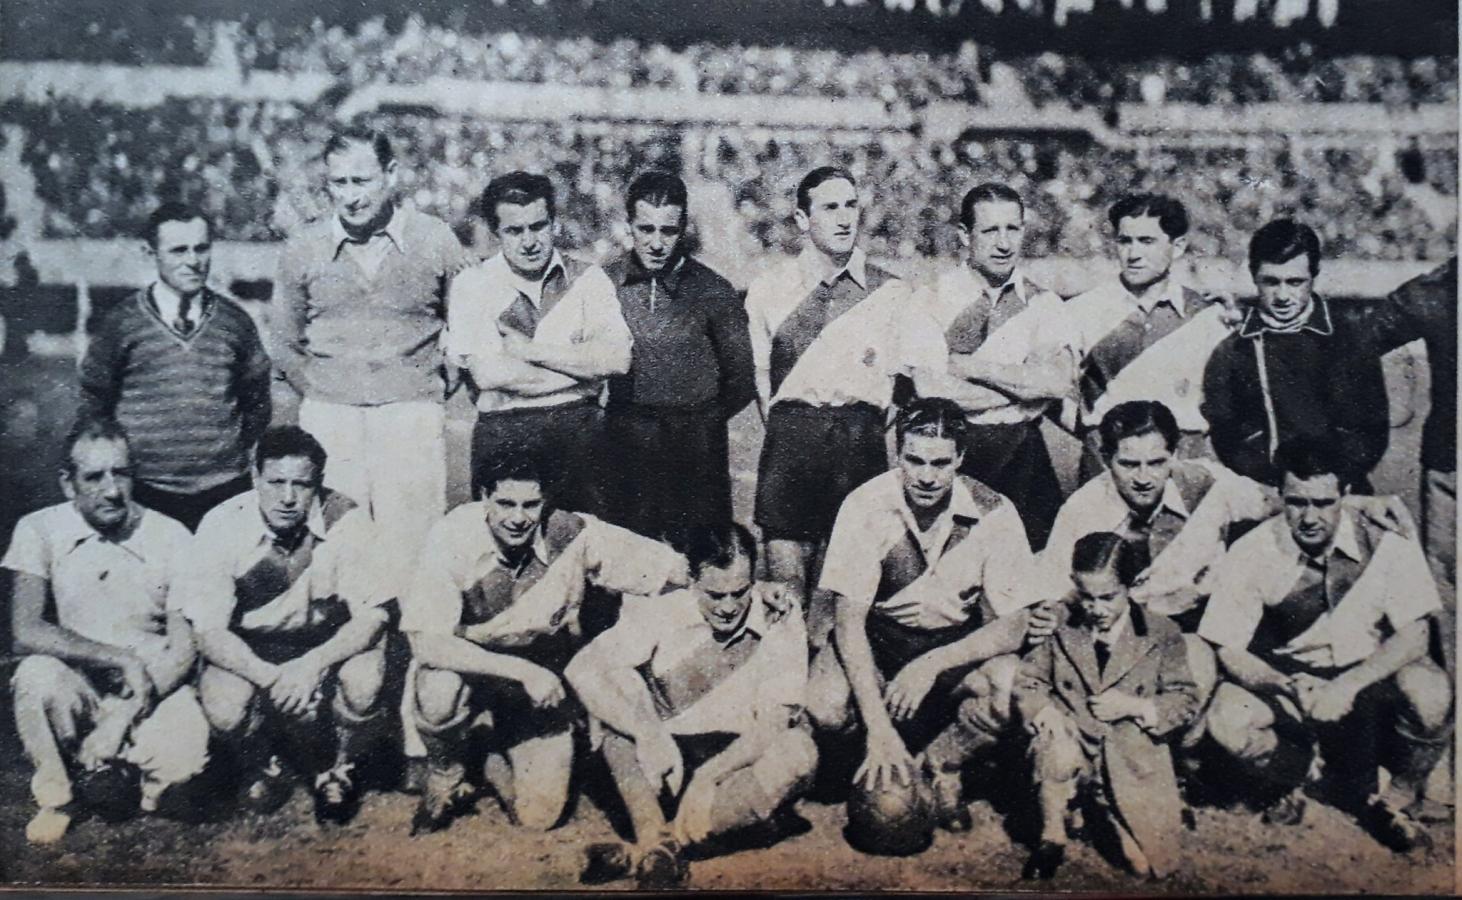 Imagen El plantel de River que empató 2-2 con Boca en 1938